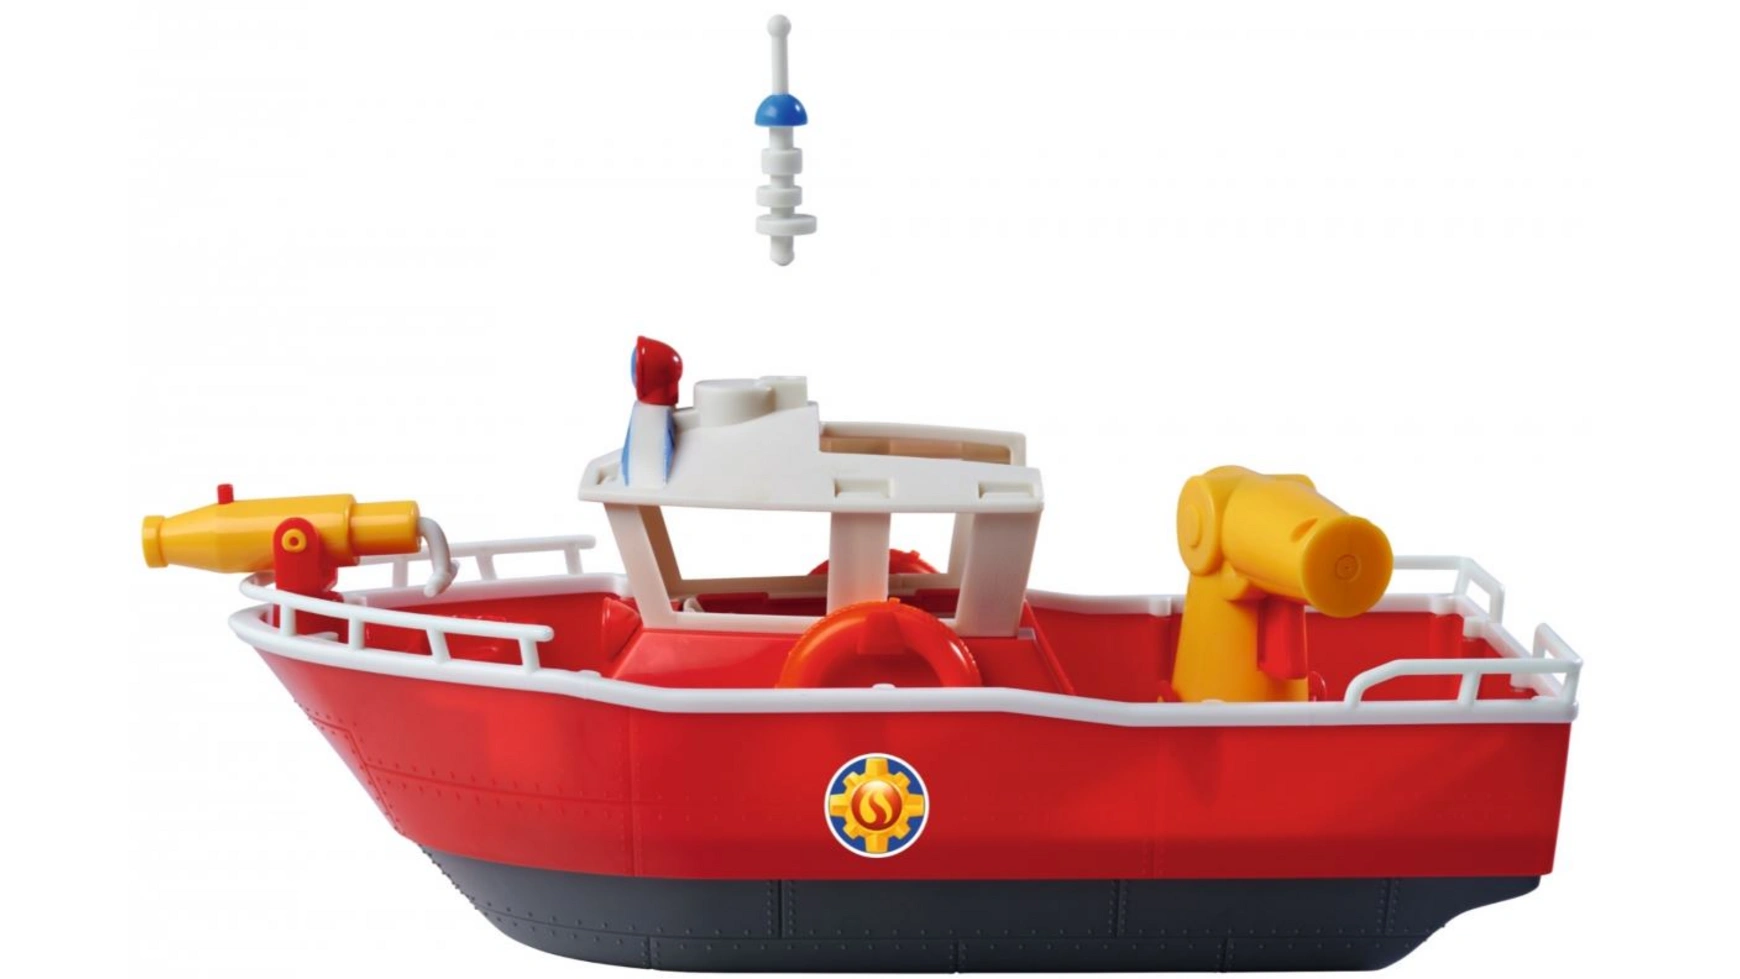 Пожарный сэм пожарная лодка сэма титана Simba пожарный автомобиль технок малыш 3978 36 см красный